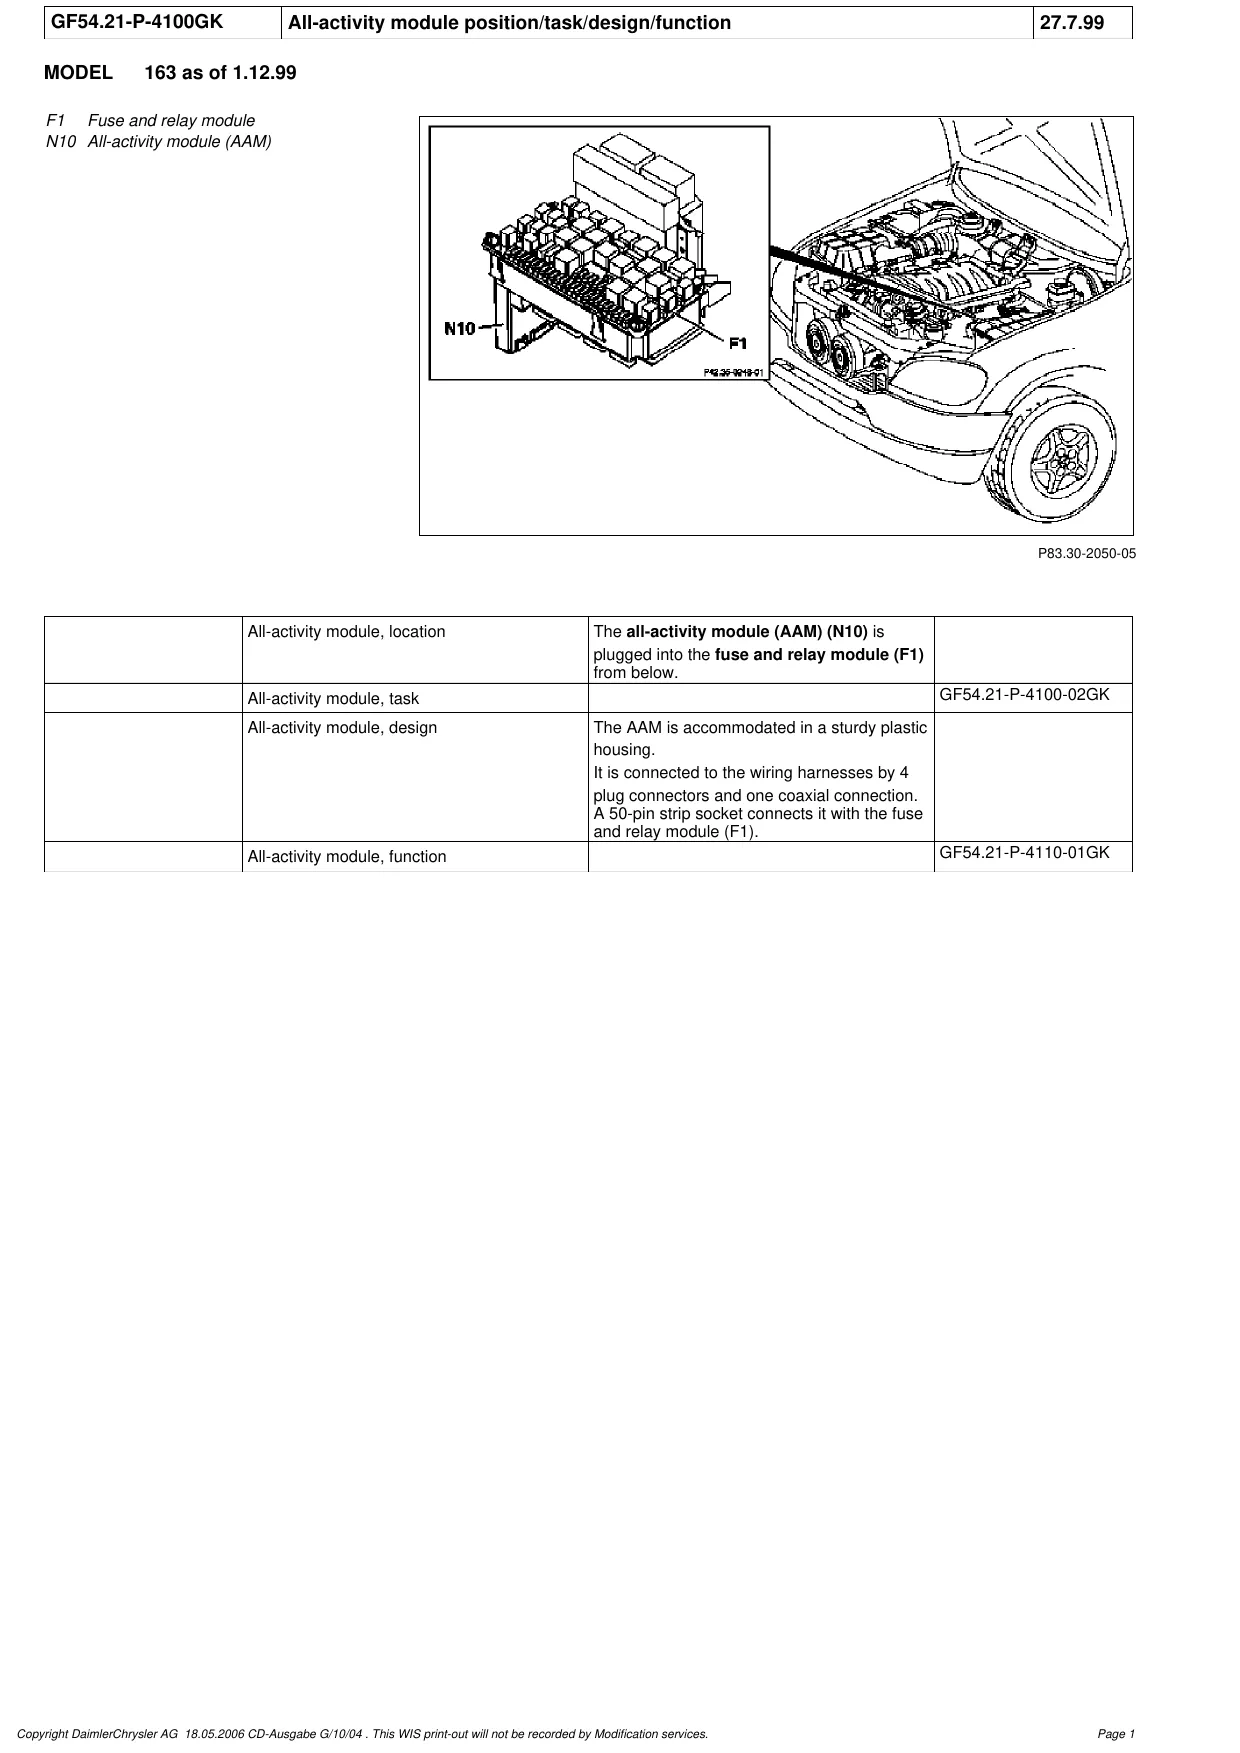 1998-2005 Mercedes ML 320 shop manual